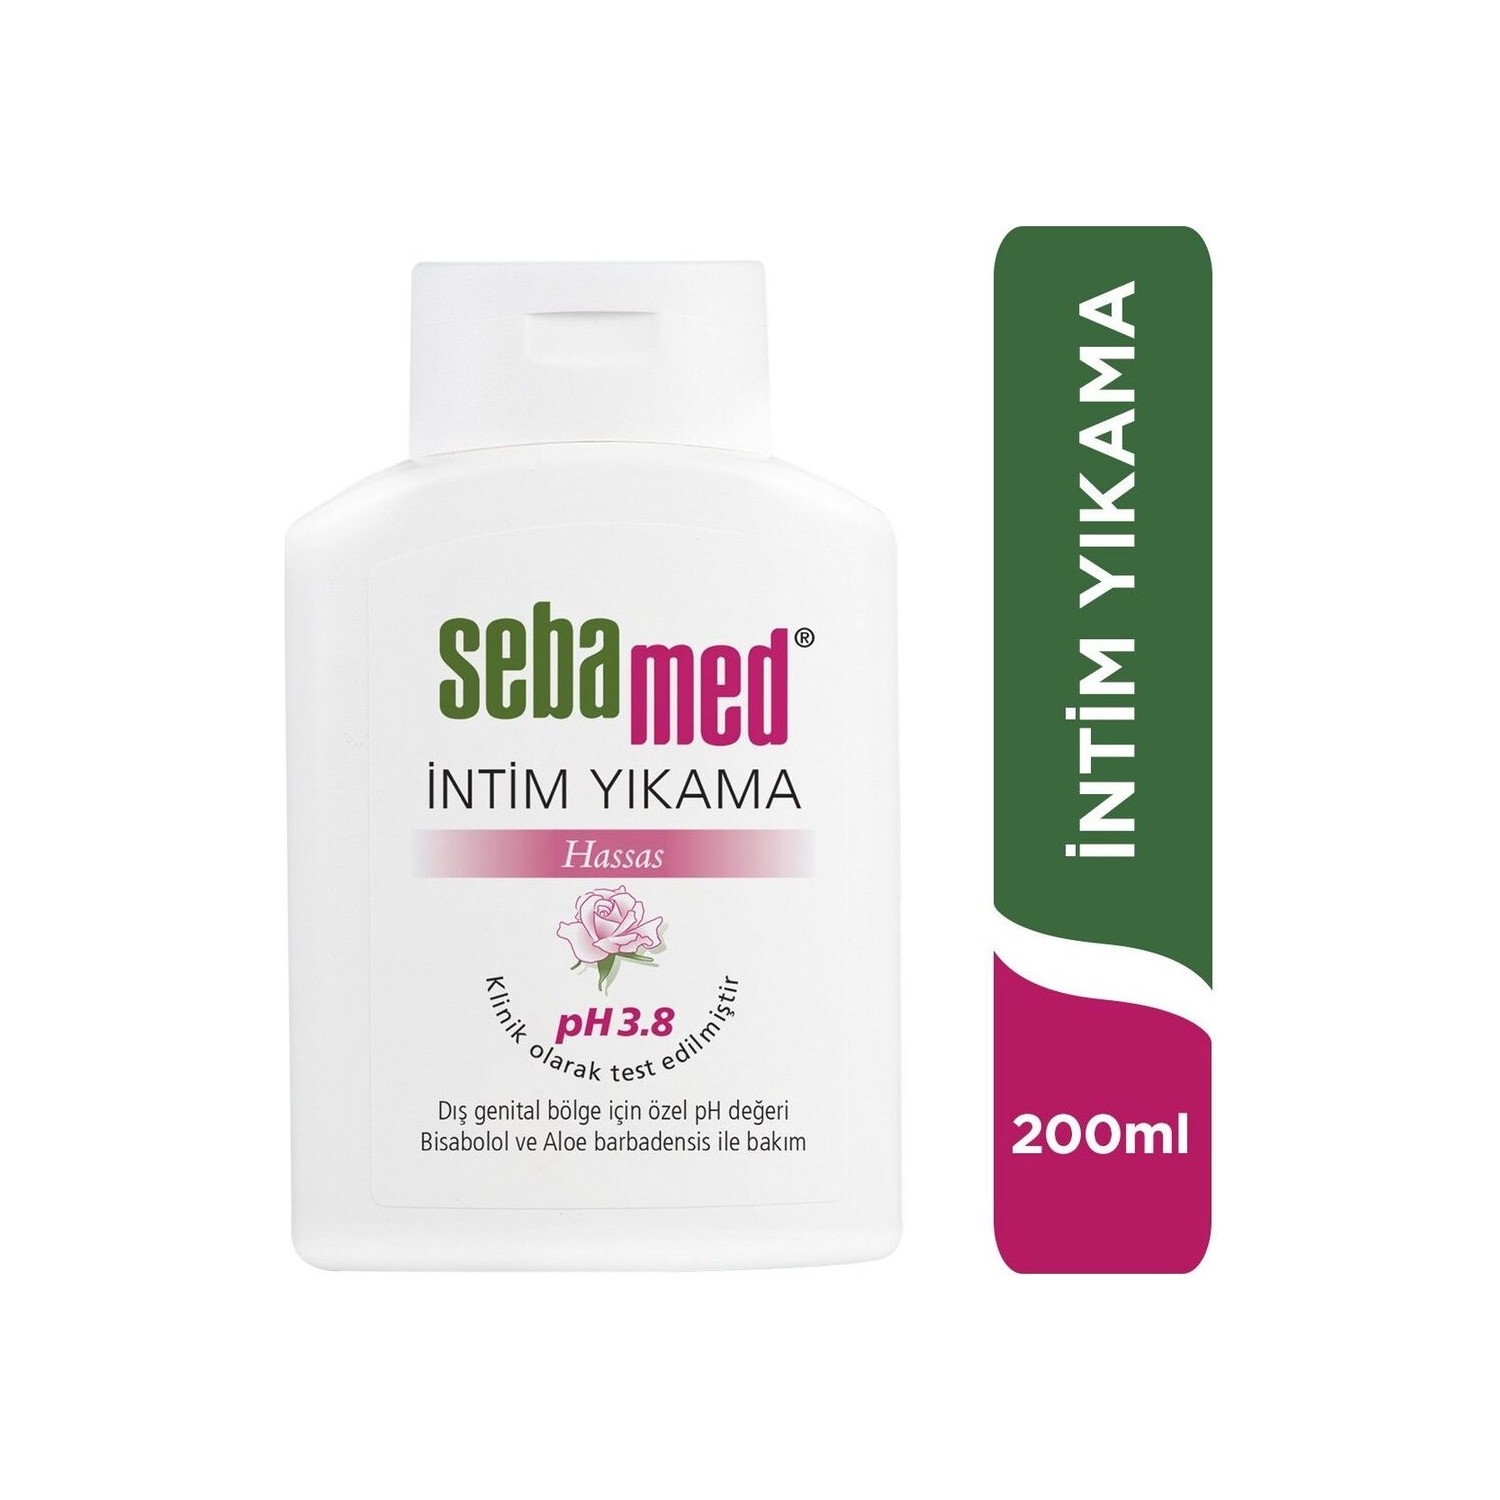 Очищающее средство Sebamed для интимной гигиены, 200 мл очищающее средство sebamed intim liquid для интимной гигиены